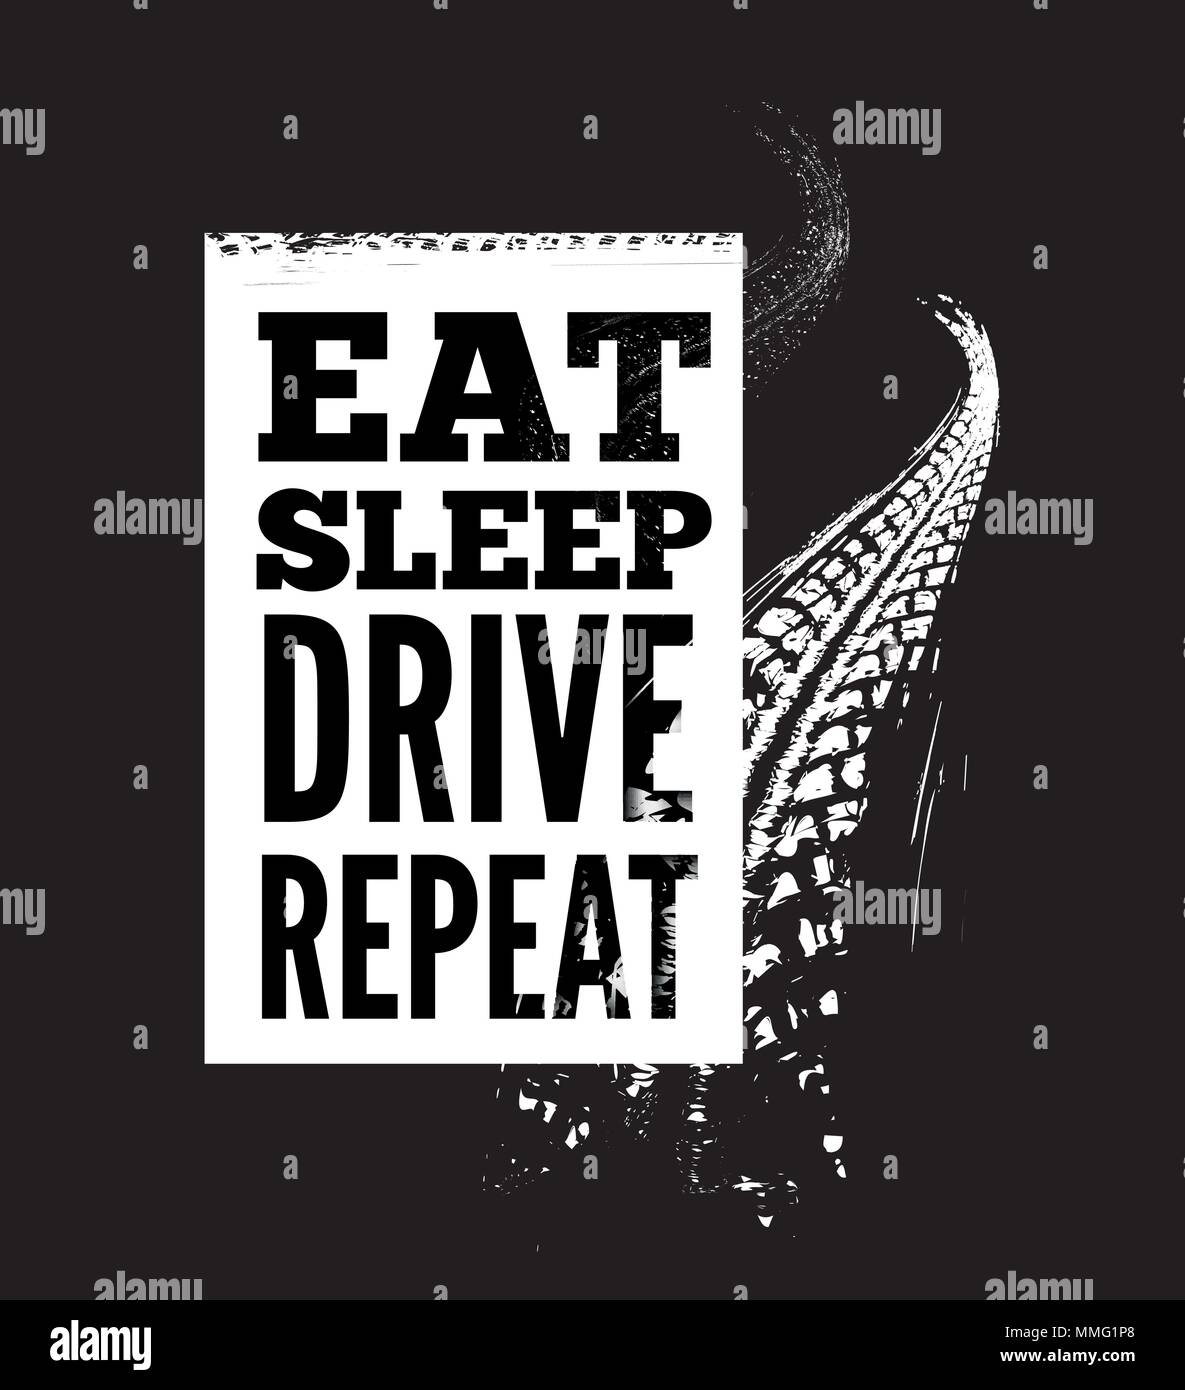 Eat Sleep Drive wiederholen Text auf reifenspuren Hintergrund Stock Vektor